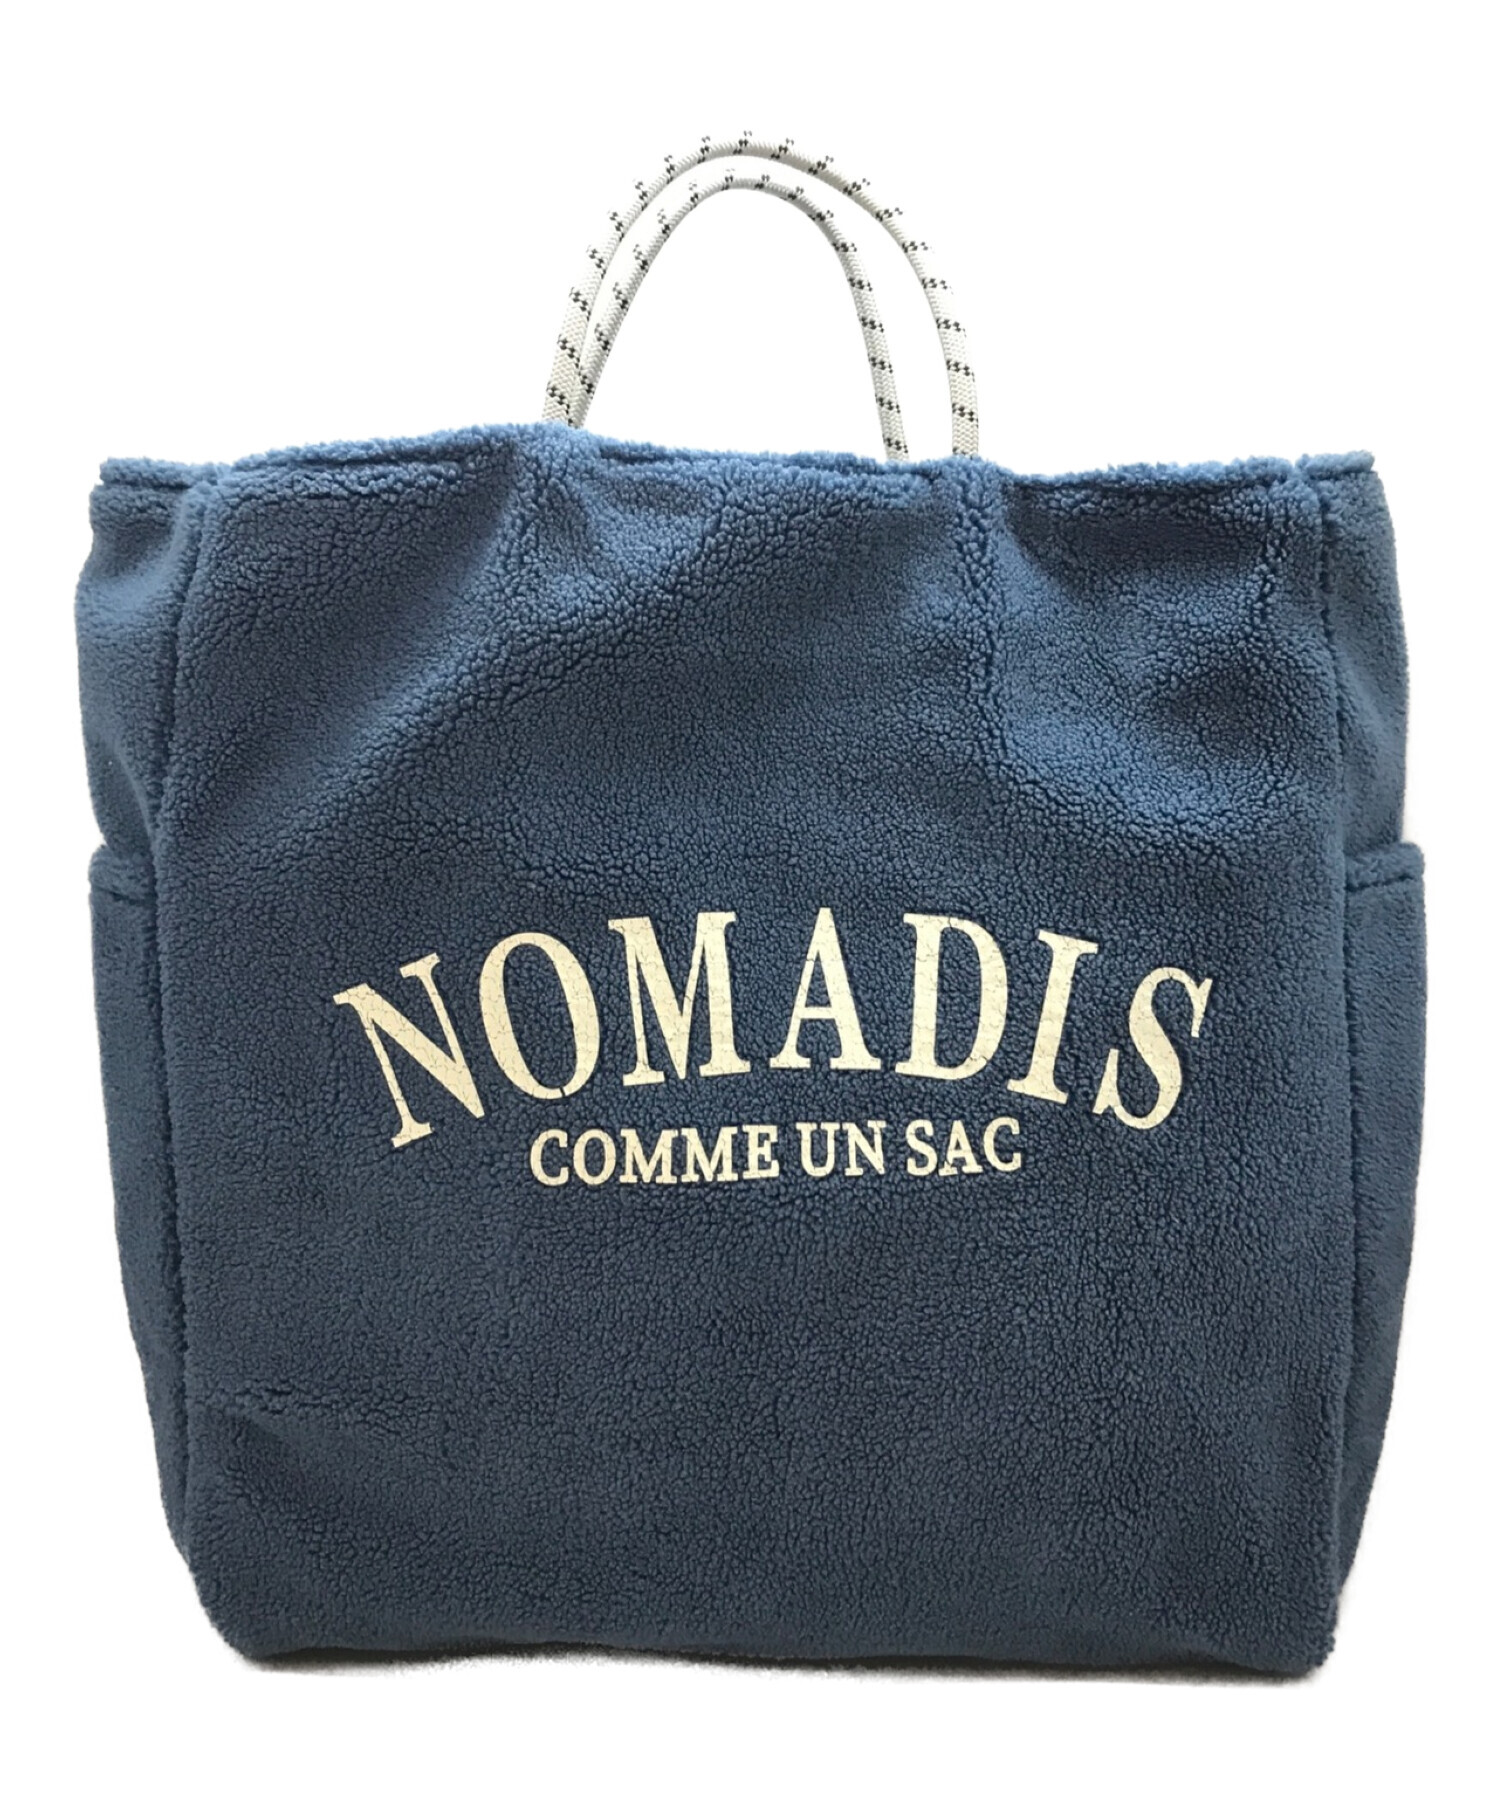 NOMADIS (ノマディス) SAC ボア リバーシブル トートバッグ ブルー サイズ:下記参照